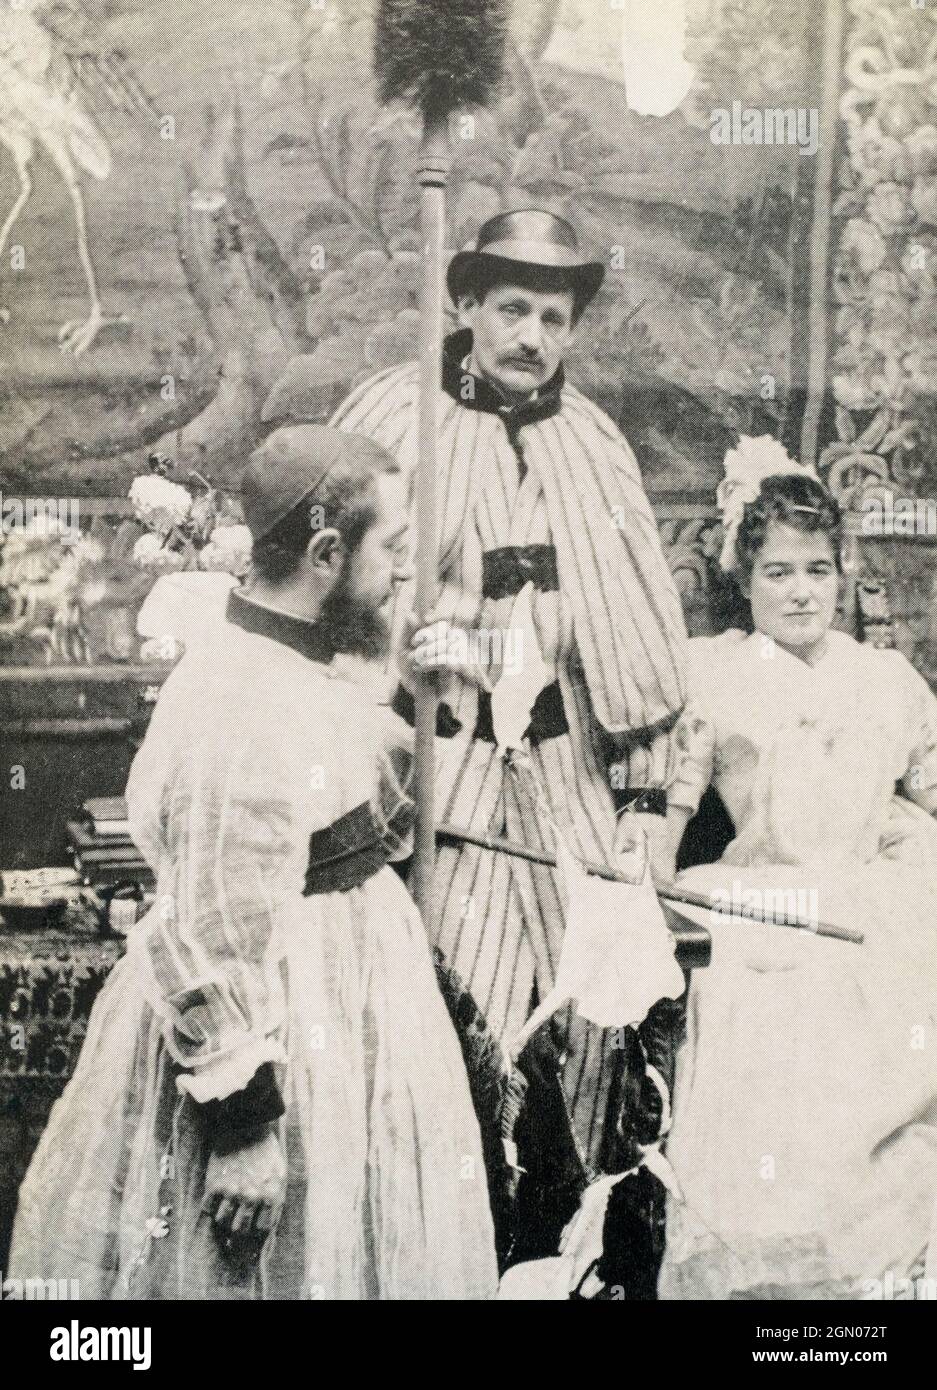 Toulouse-Lautrec, à gauche, vêtu d'un choirboy pour un événement au Moulin Rouge en 1894. Après une photographie du photographe français Maurice Guibert, 1856 - 1922, un ami de Toulouse-Lautrec. Henri Toulouse-Lautrec, 1864 - 1901, artiste postimpressionniste français. Banque D'Images